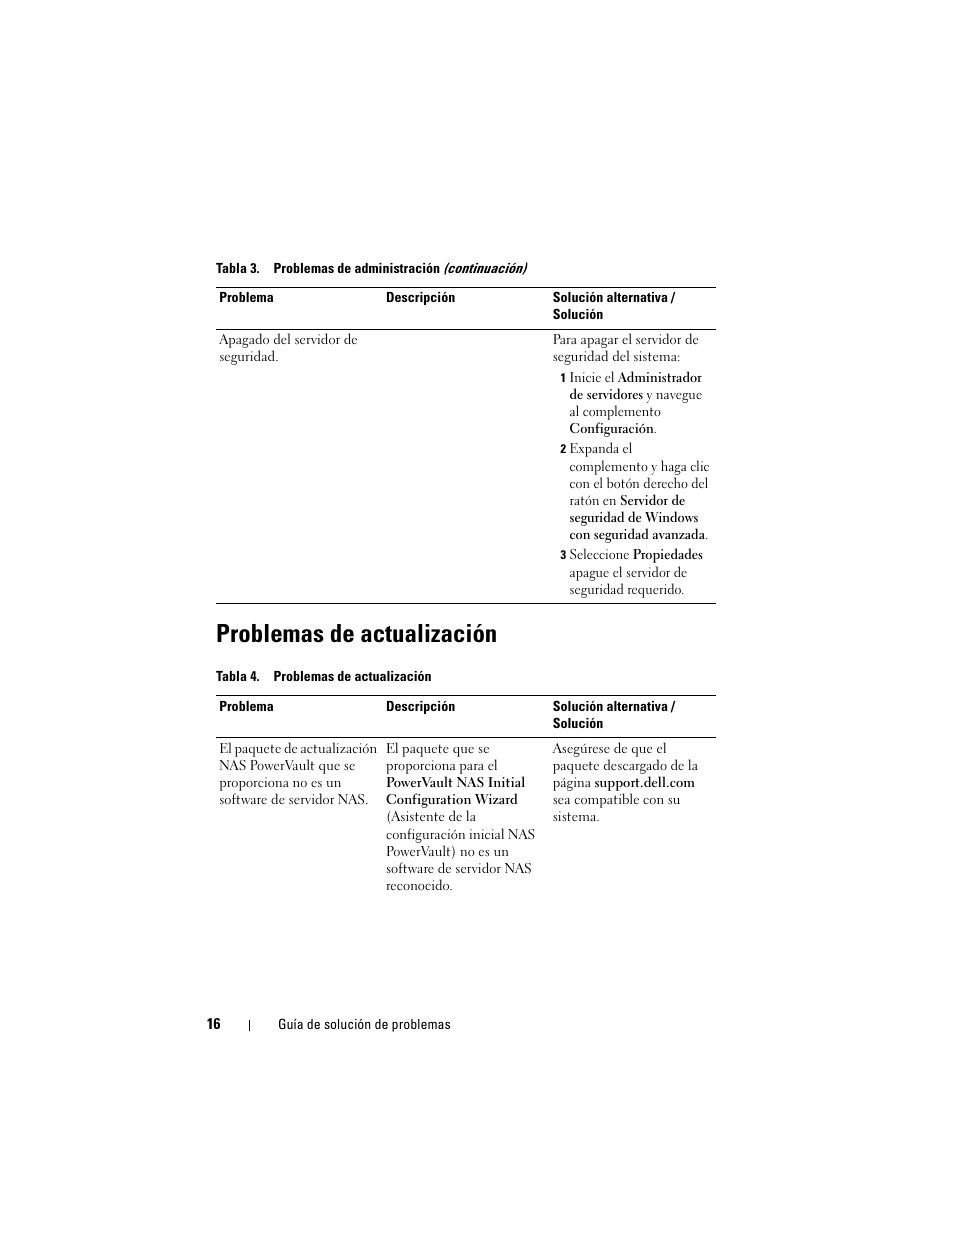 Problemas de actualización | Dell PowerVault NX300 Manual del usuario | Página 16 / 18